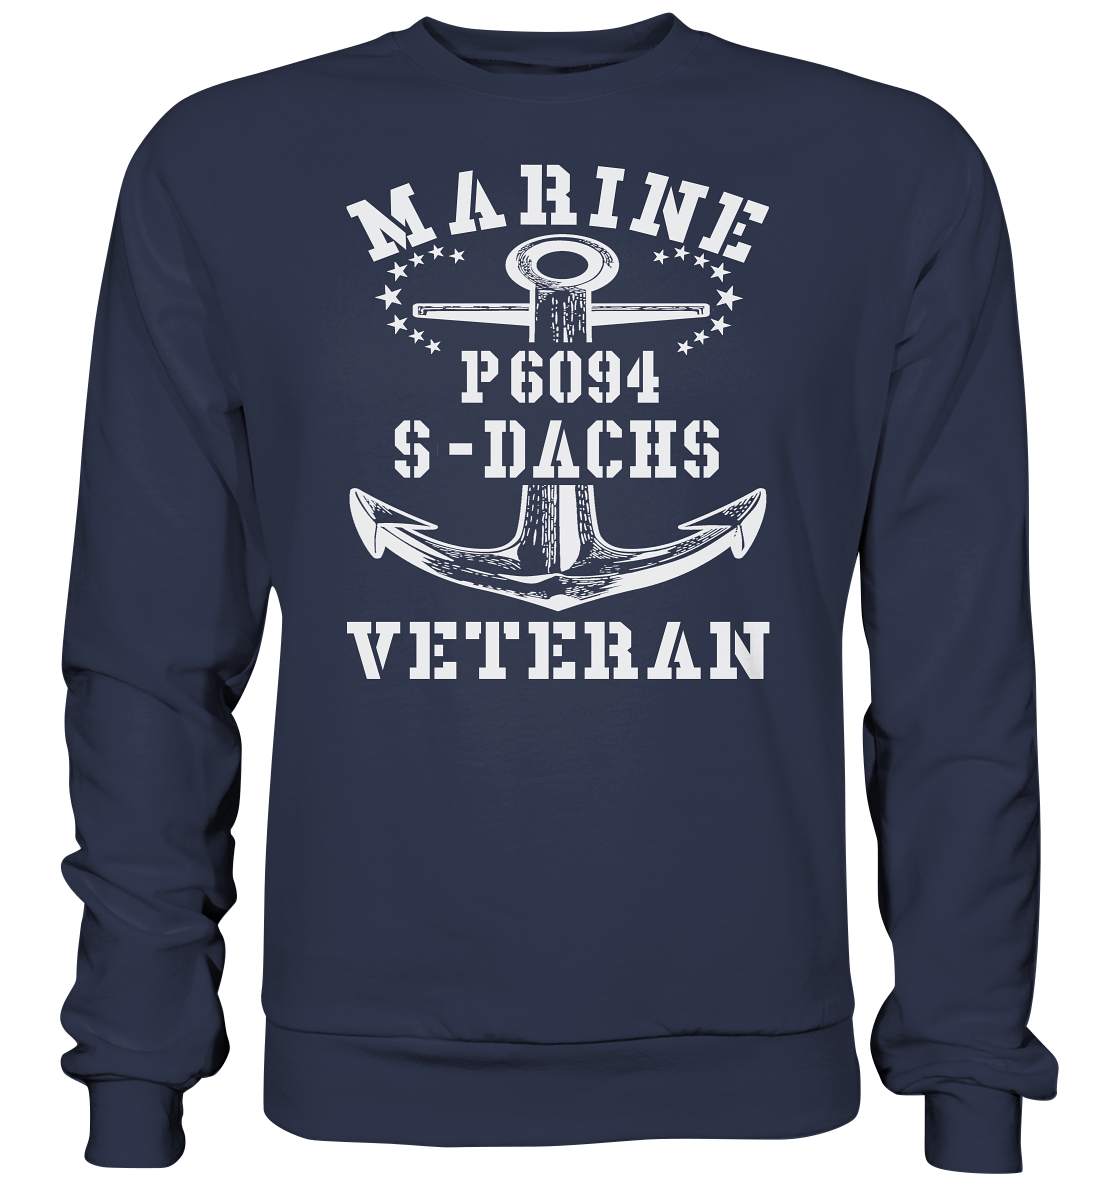 P6094 S-DACHS Marine Veteran - Premium Sweatshirt